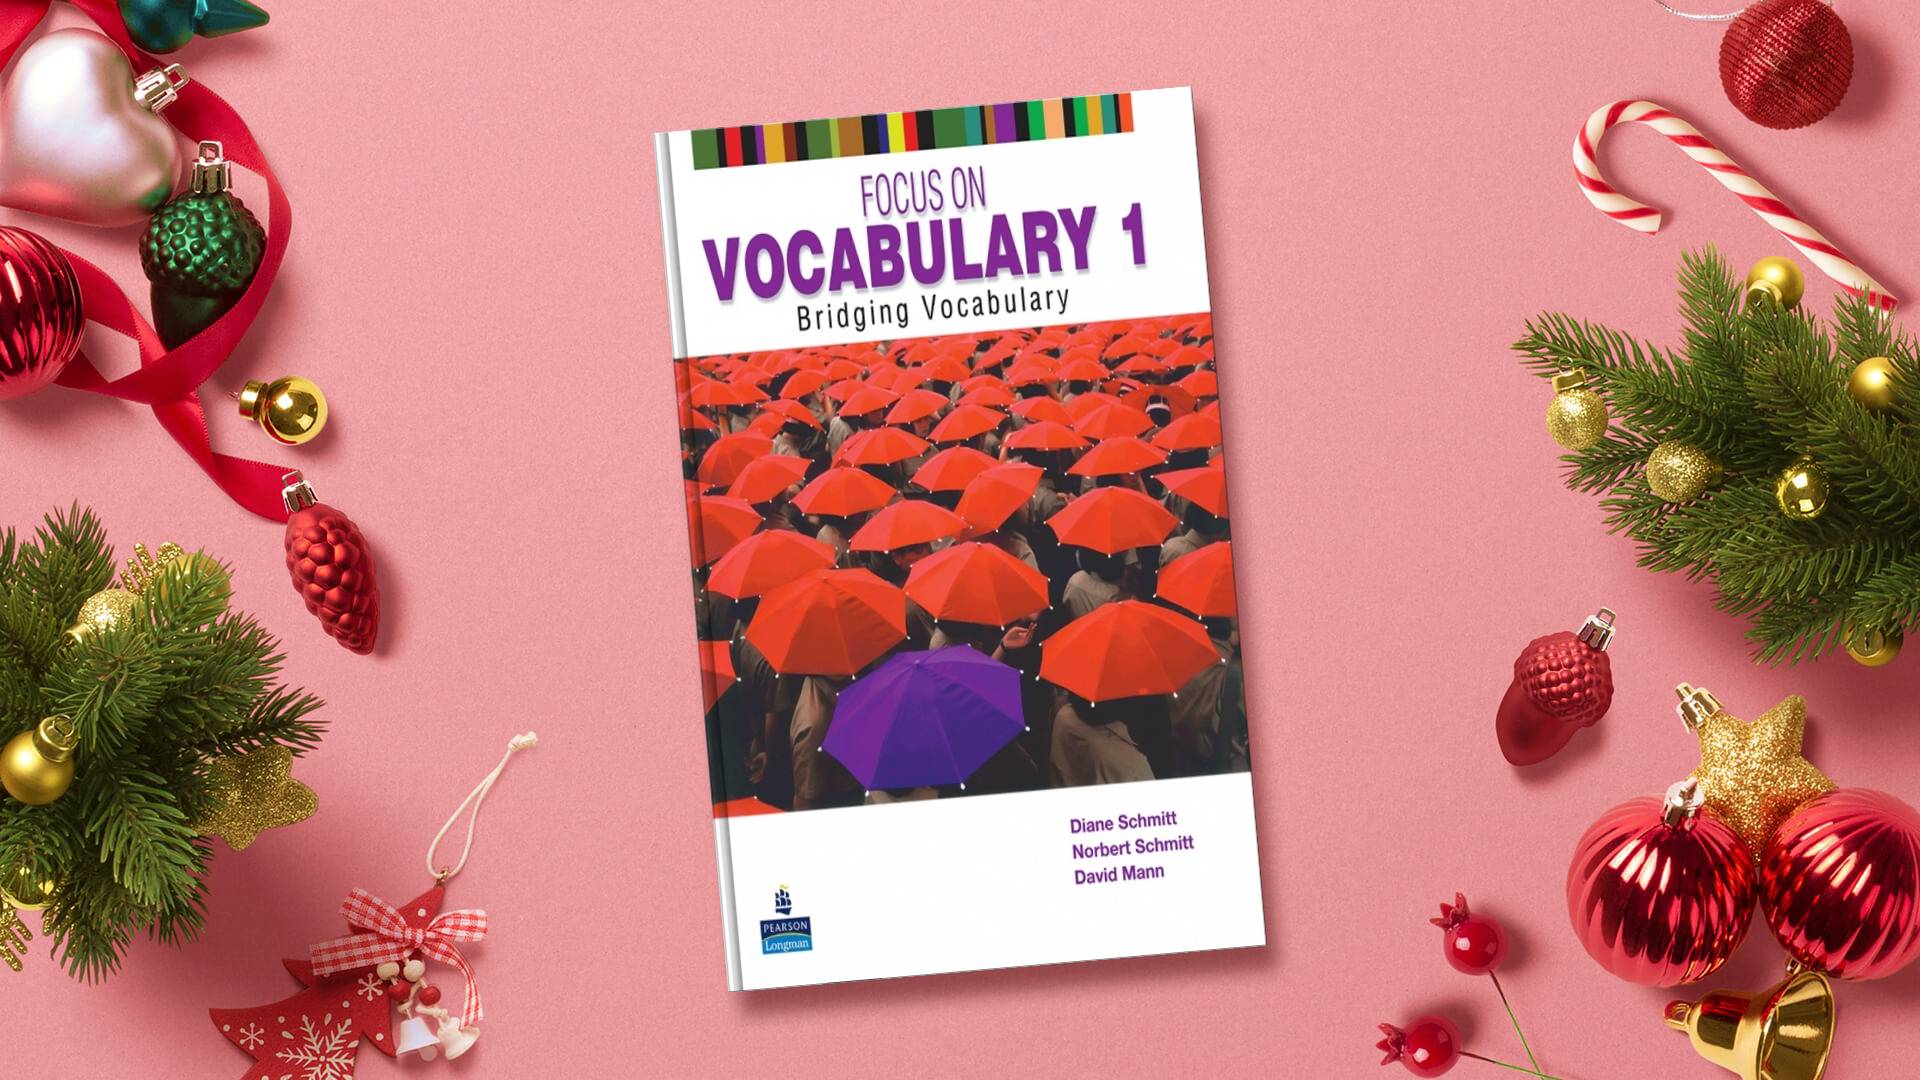 خرید کتاب زبان | فروشگاه اینترنتی کتاب زبان | Focus on Vocabulary 1 | فوکوس آن وکبیولری یک